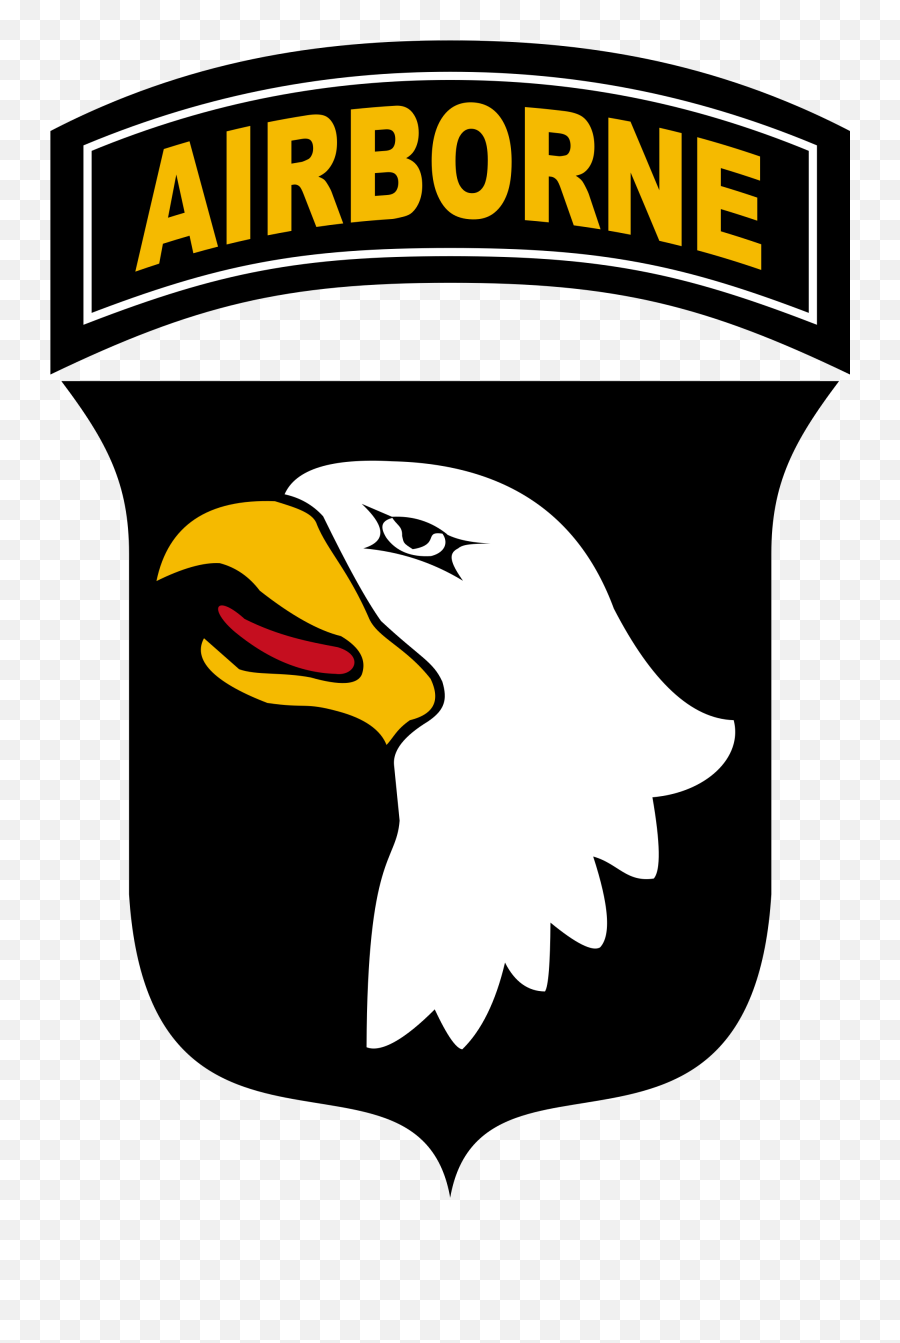 501st Infantry Regiment - 101 Airborne Emoji,Four Leaf Clover Emoji